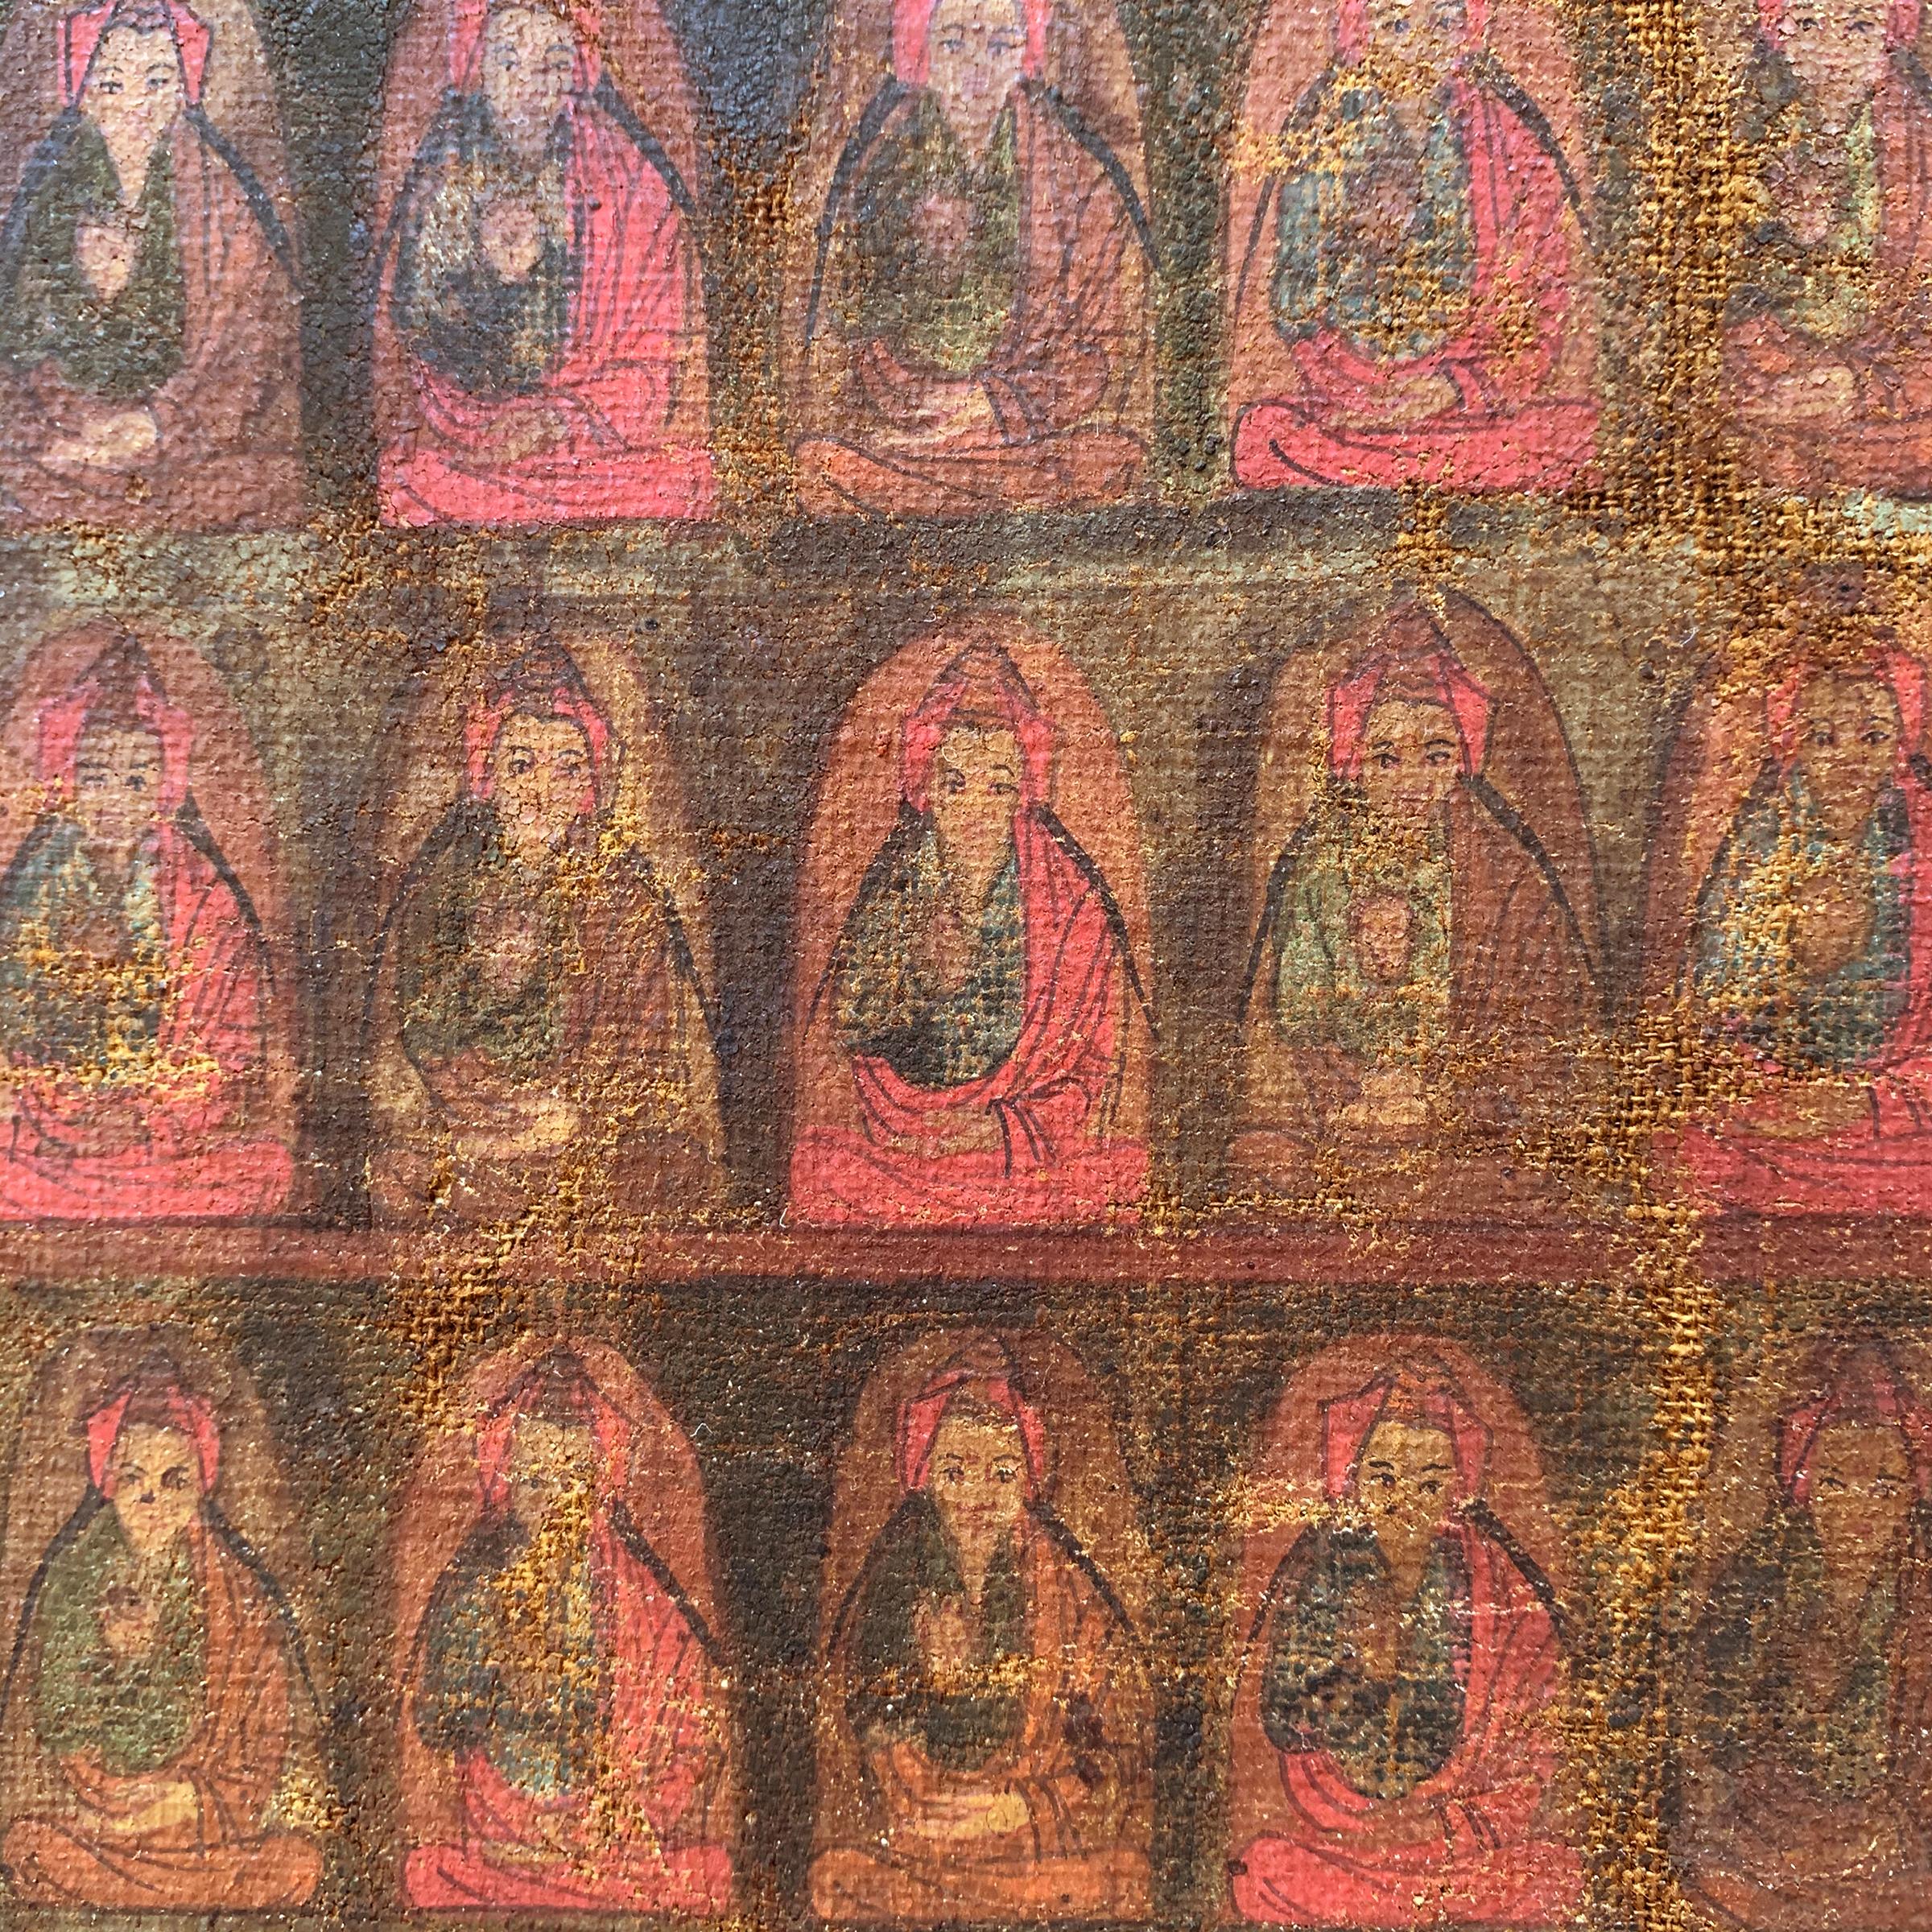 Ming 16th Century Tibetan Thangka Painting